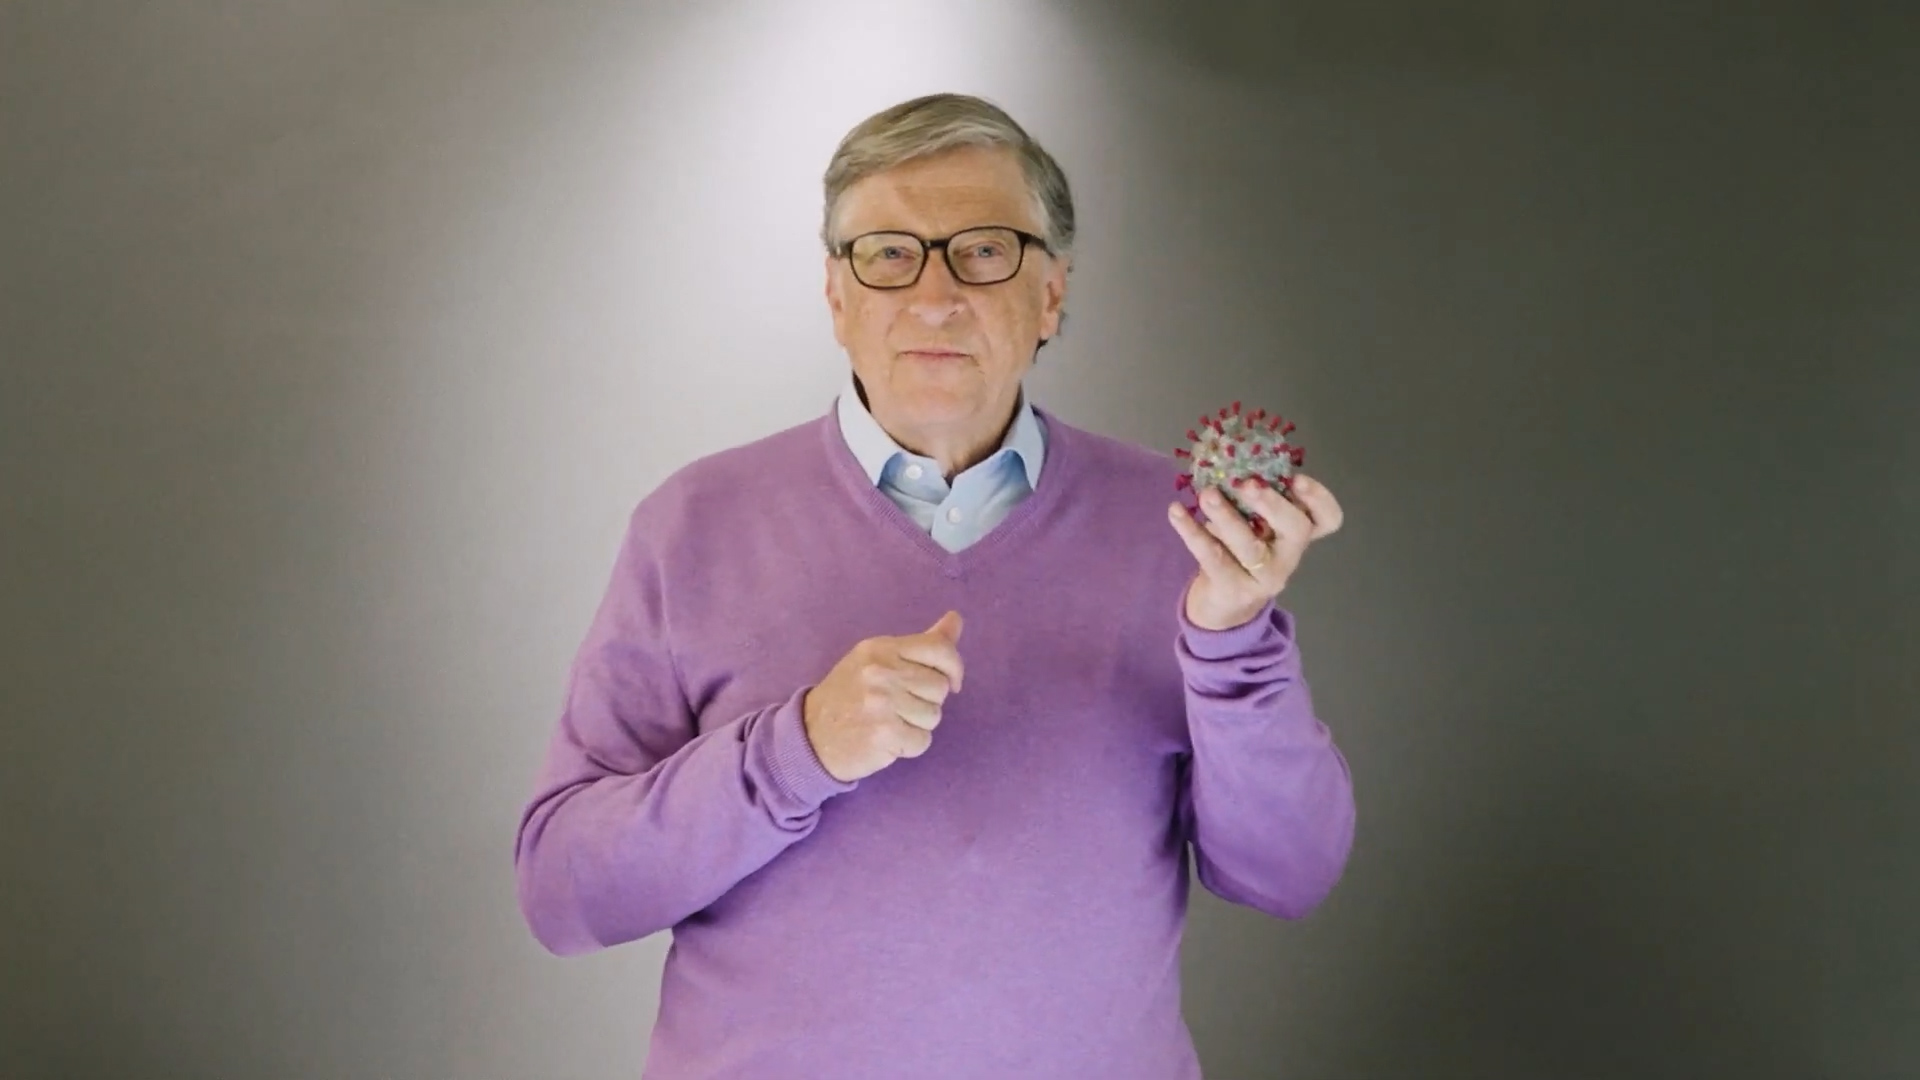 Bill Gates con una representación del coronavirus Sars-CoV-2 que provoca la COVID-19 (Fundación Gates)